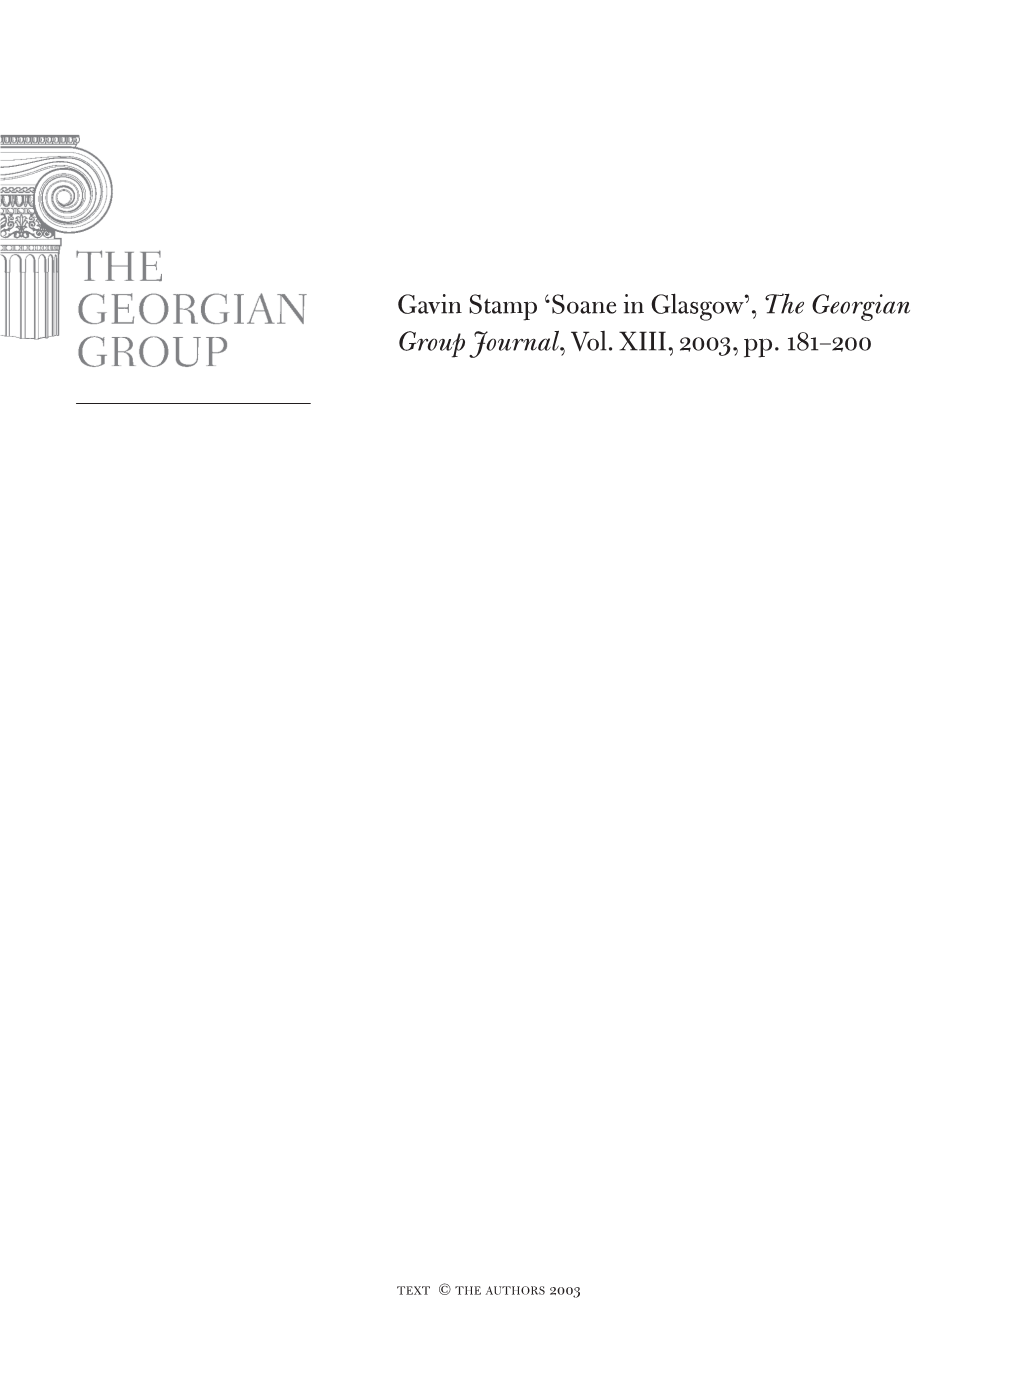 Gavin Stamp 'Soane in Glasgow', the Georgian Group Journal, Vol. Xiii